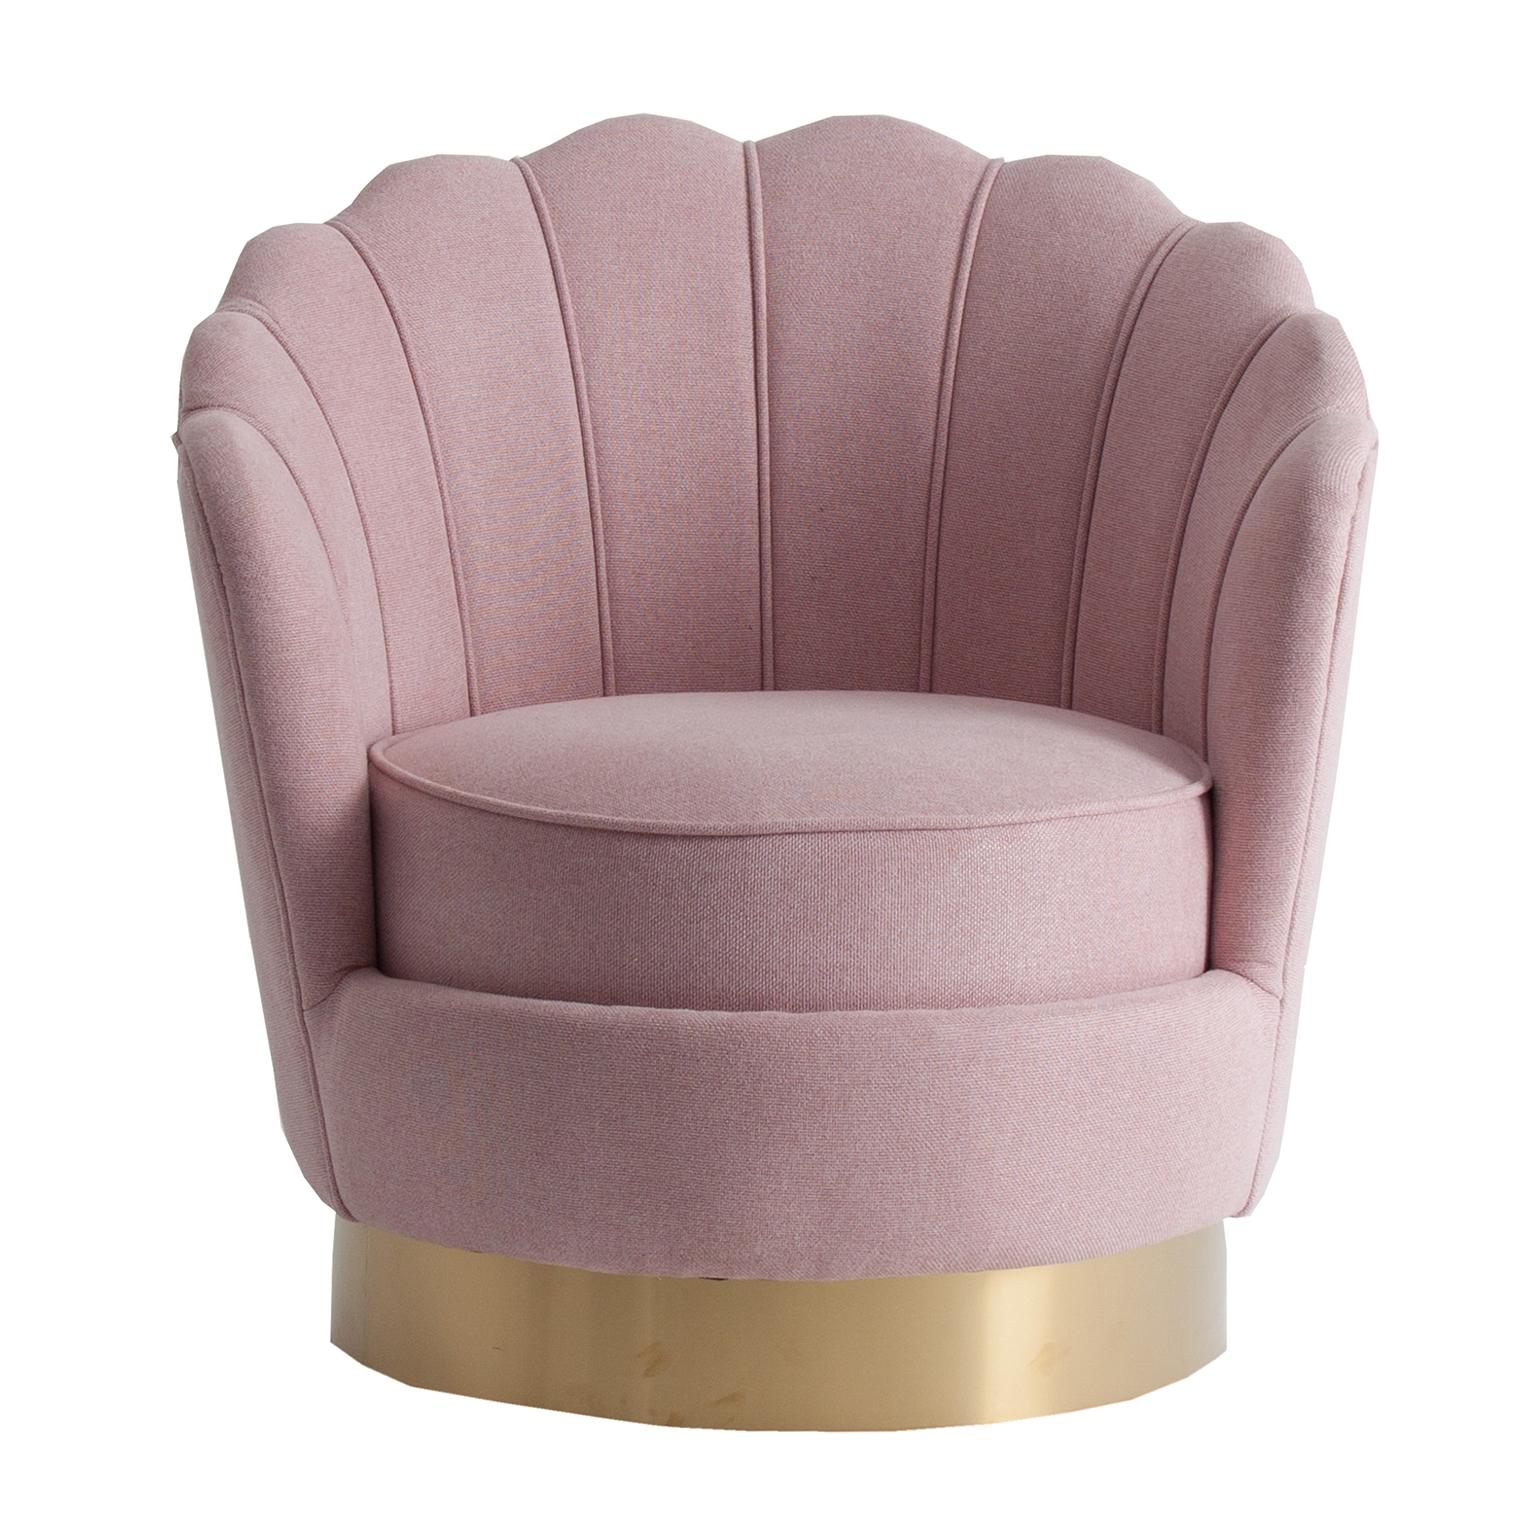 Goldener runder Fuß und pudrig rosa Stoff und Lounge bequemer Sessel im Art Deco Stil.